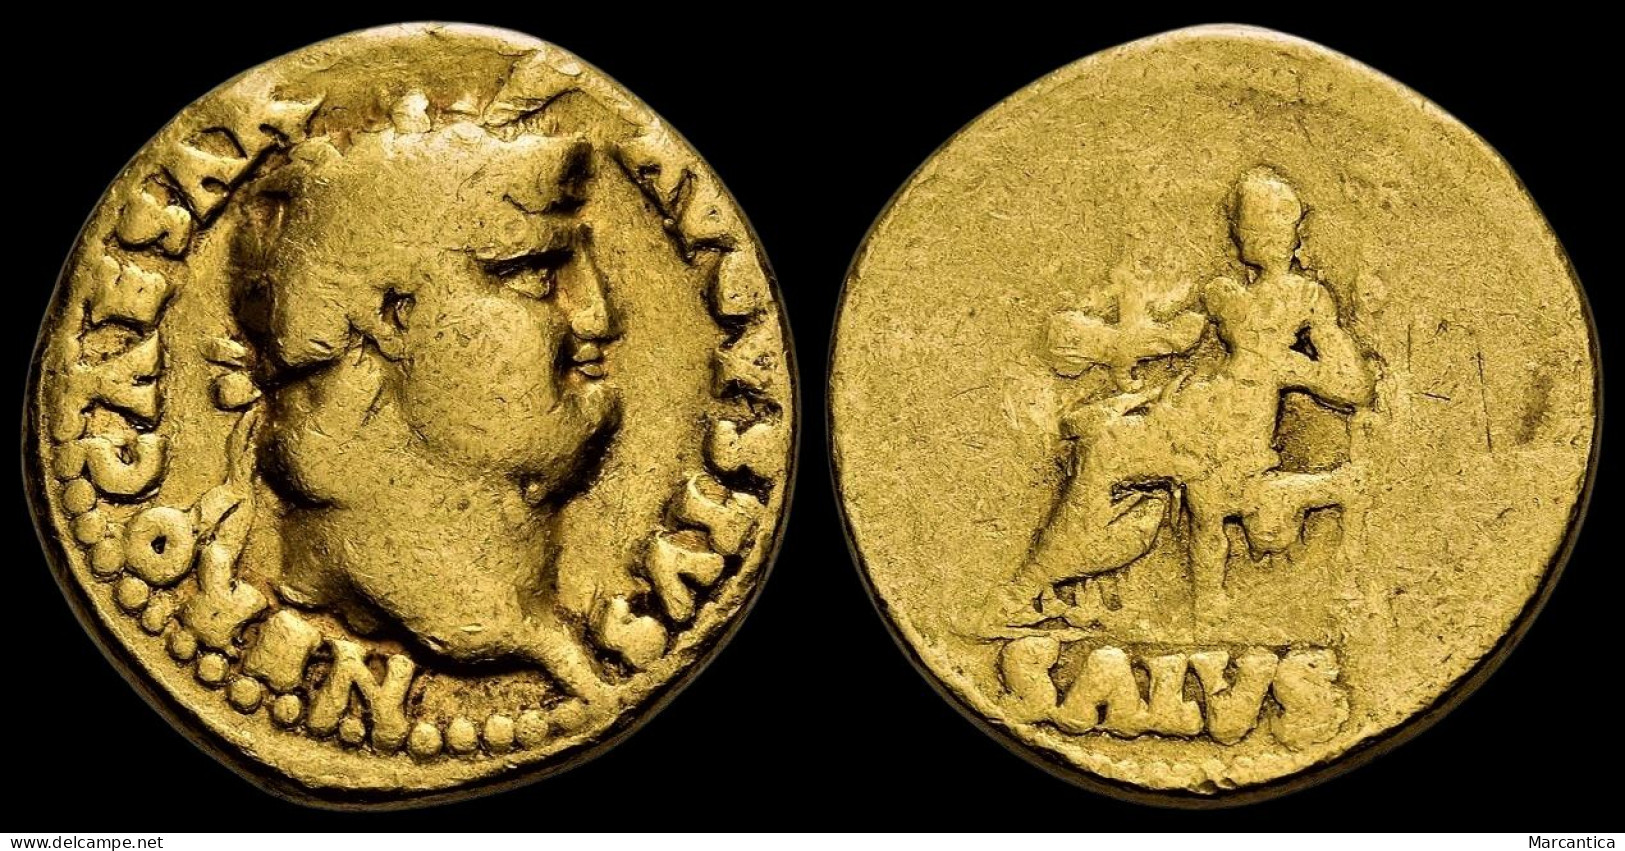 NERO. AD 54-68. AV Aureus. Rome Mint. Circa AD 66-67. - The Julio-Claudians (27 BC Tot 69 AD)